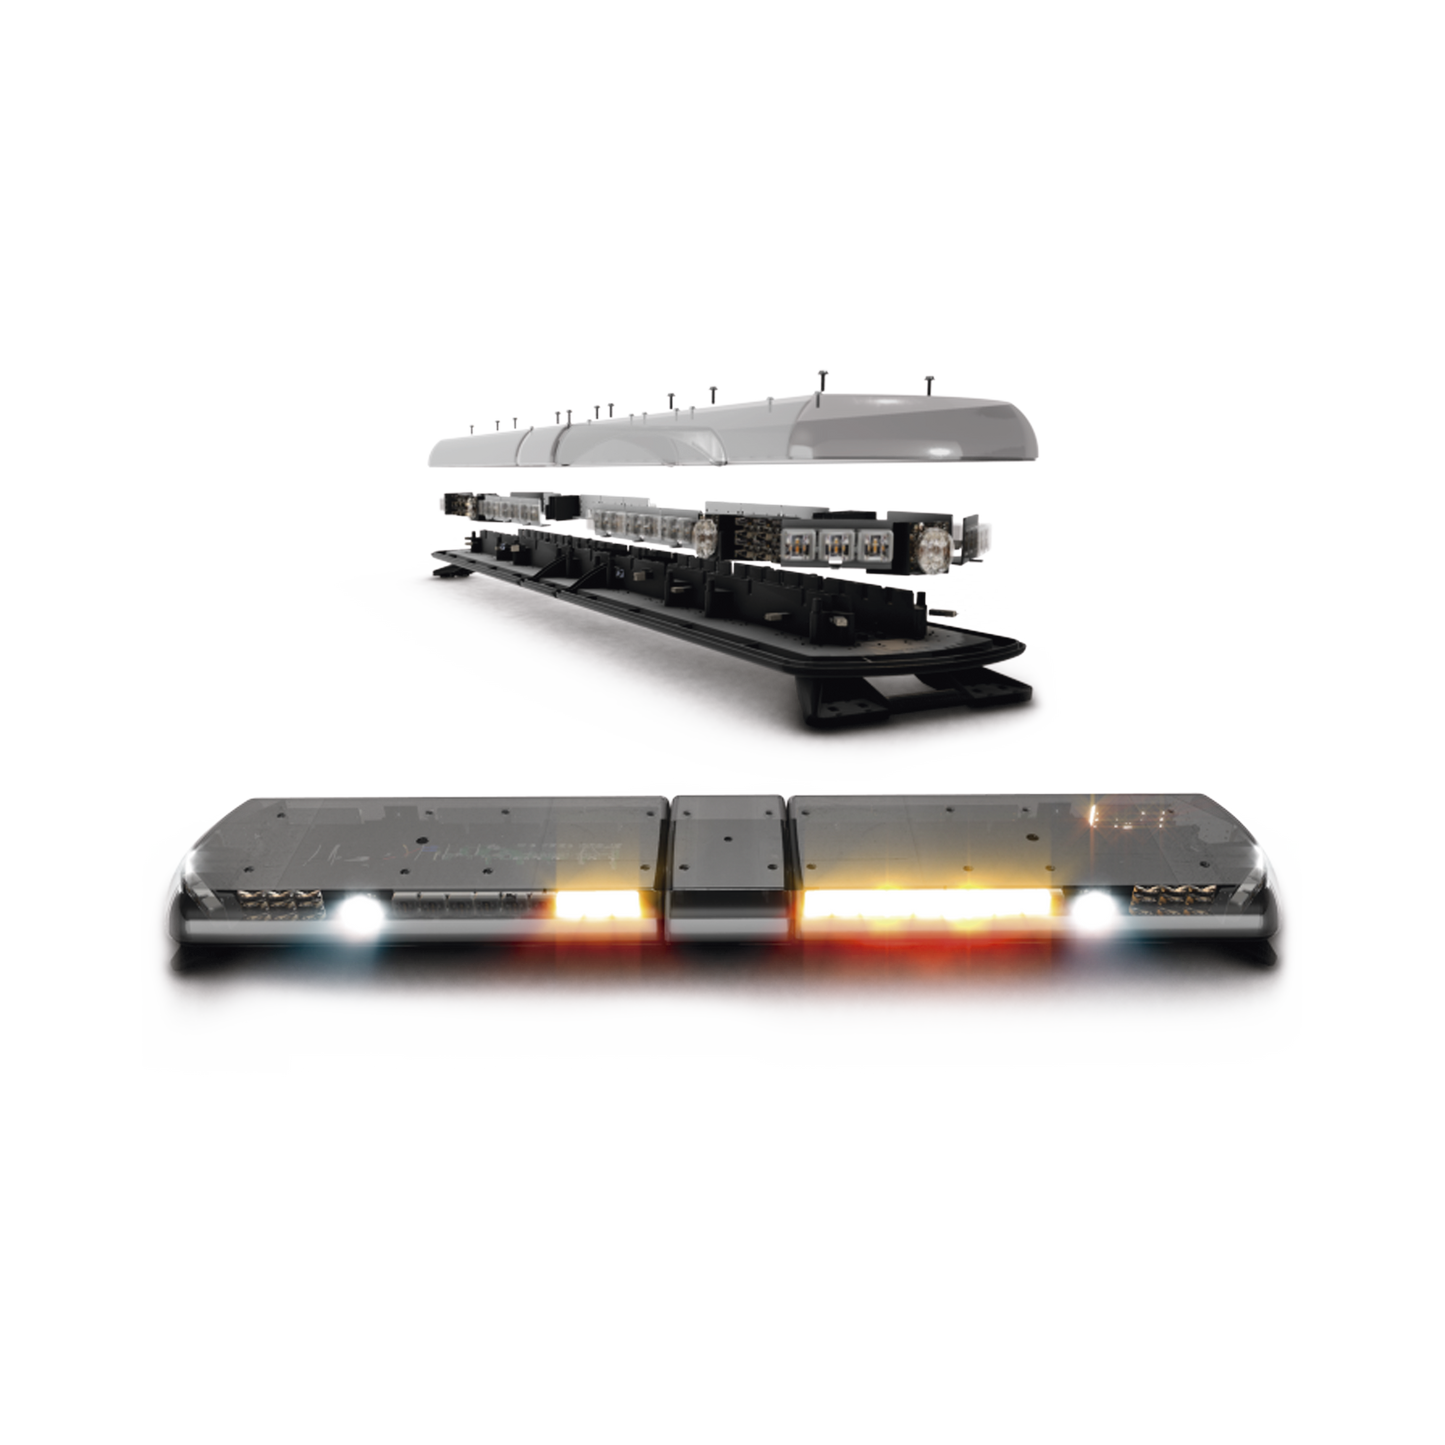 Barra de luces Vantage PRO Ultra Brillante con 64 poderosos LEDs última generación, color Ámbar con 2 módulos traseros en rojo